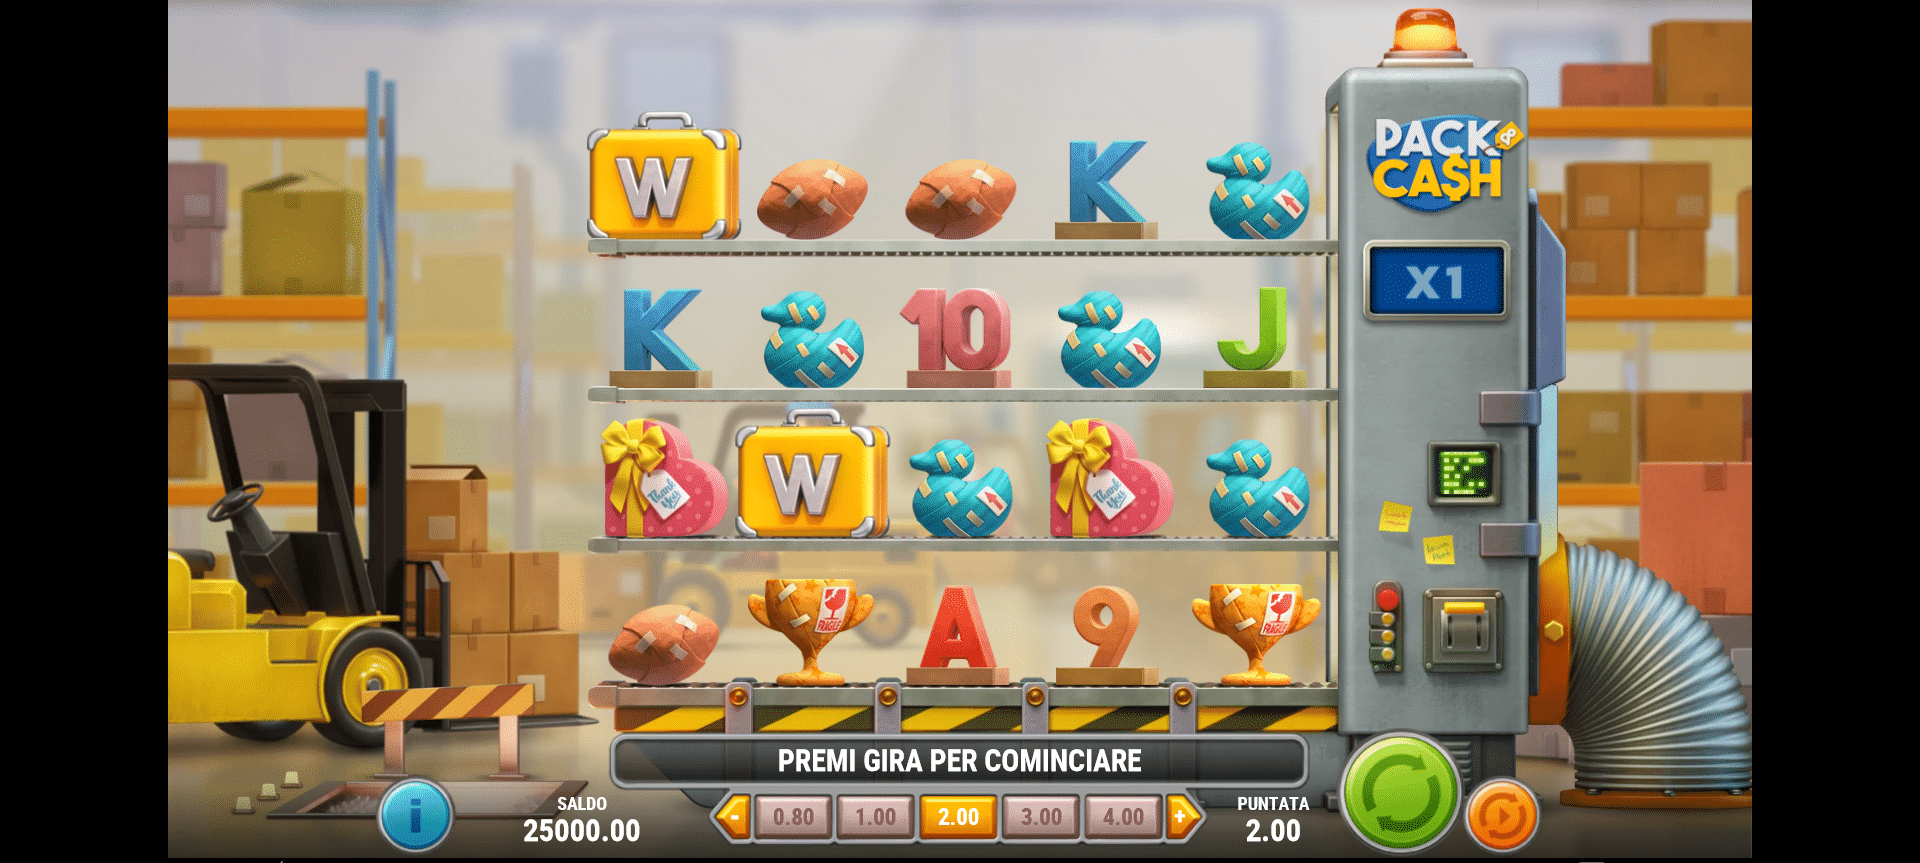 schermata del gioco slot machine pack and cash